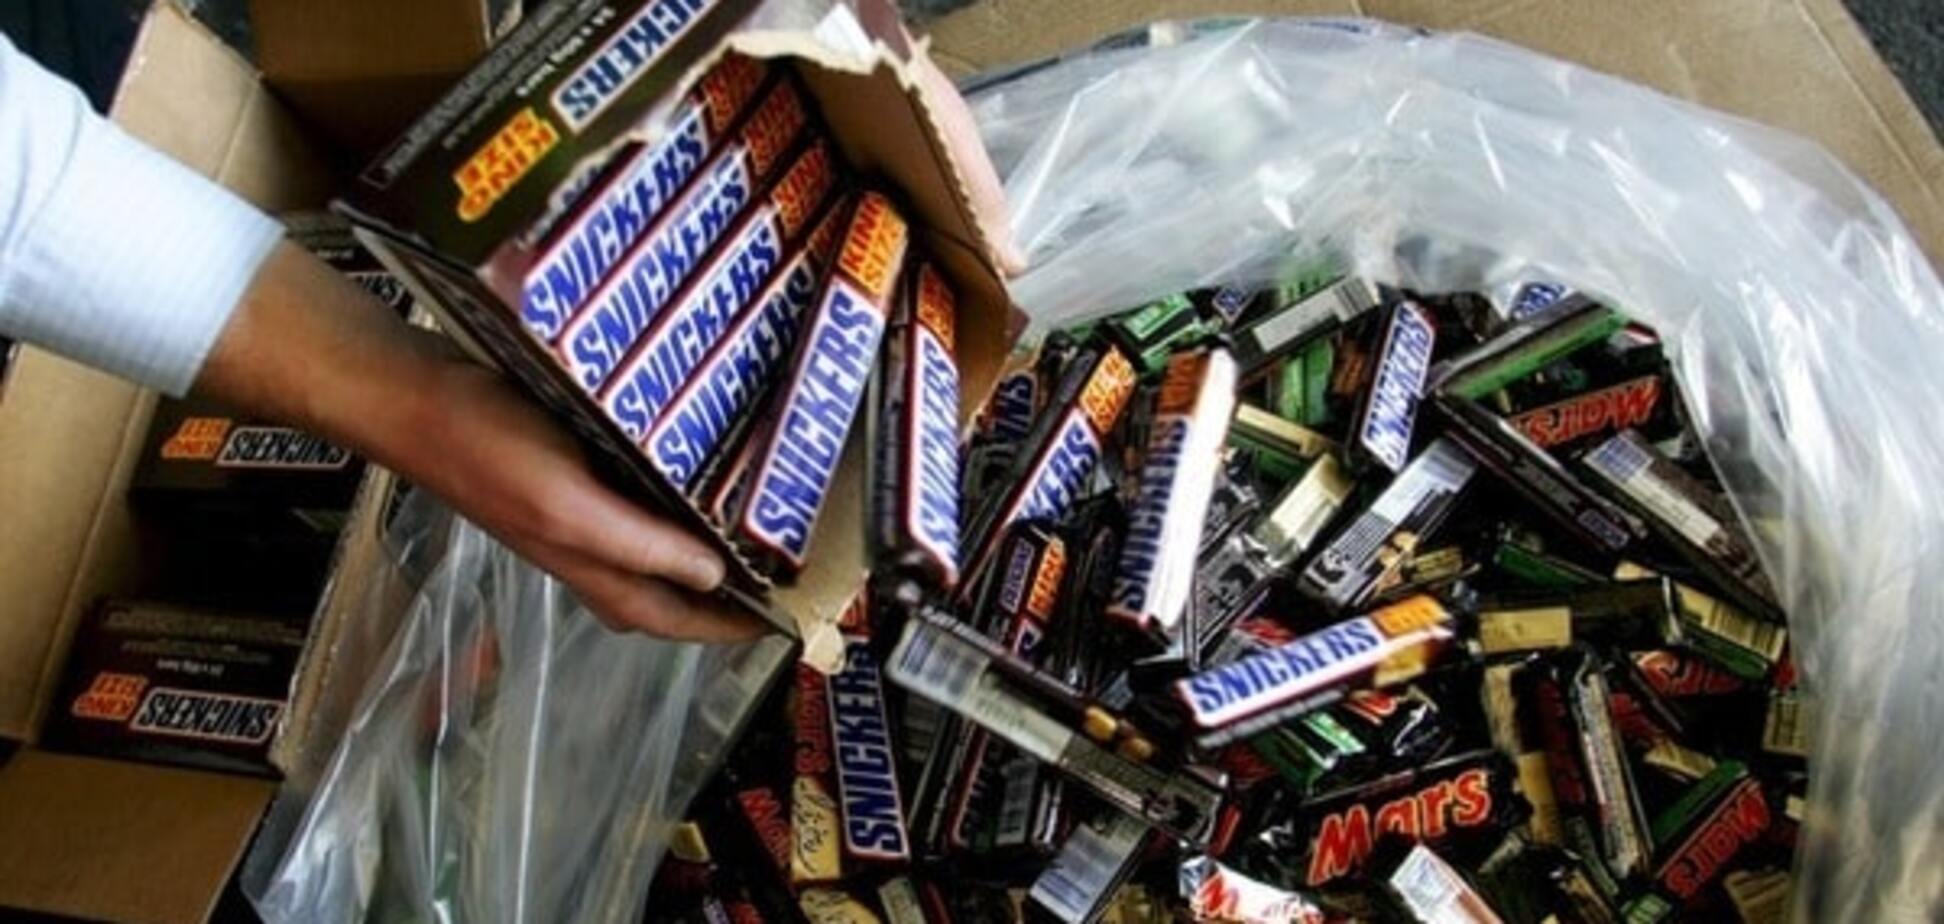 Шоколадки 'Марс' и 'Сникерс' уберут из продажи в 55 странах